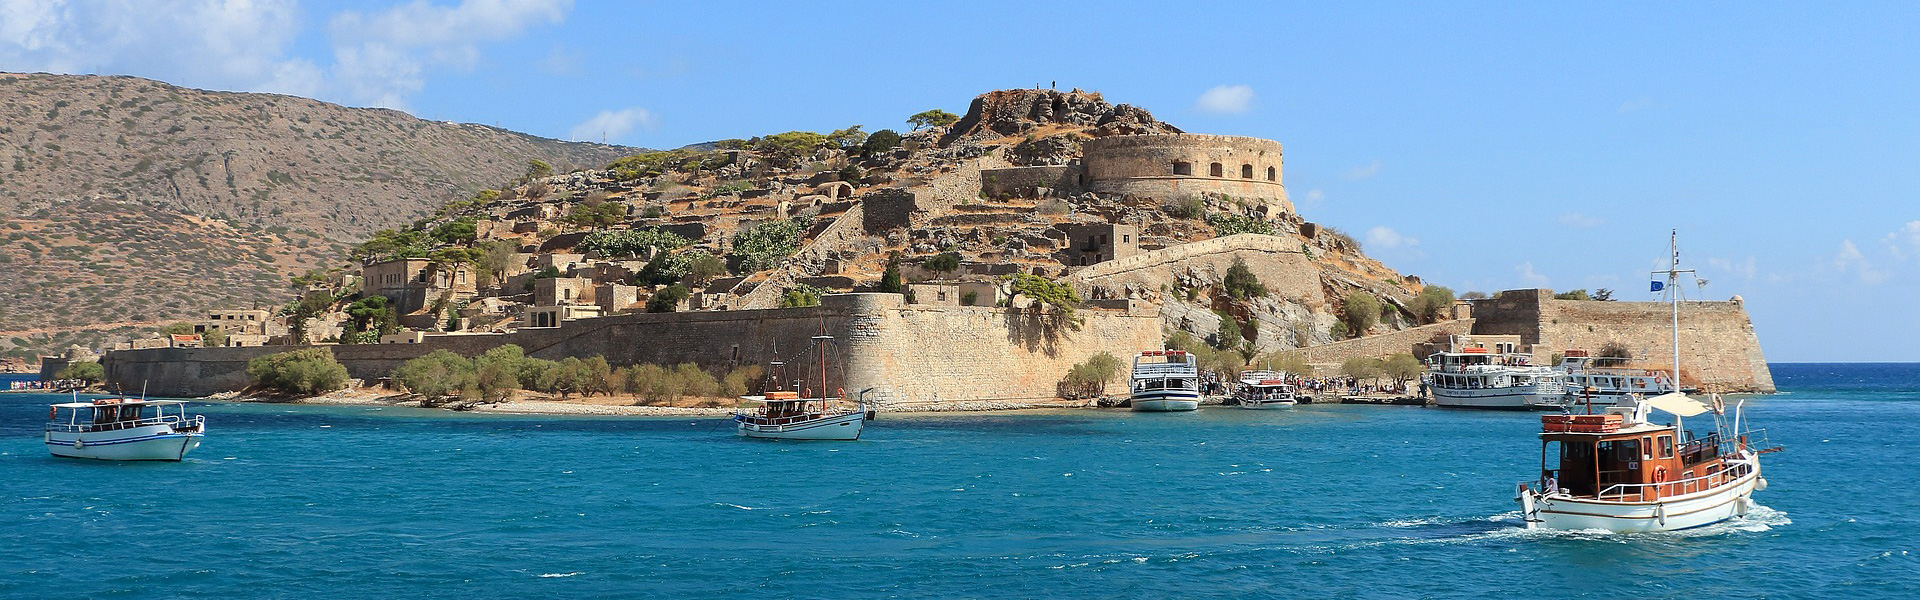 Boote am Heraklion-Hafen auf der griechischen Insel Kreta